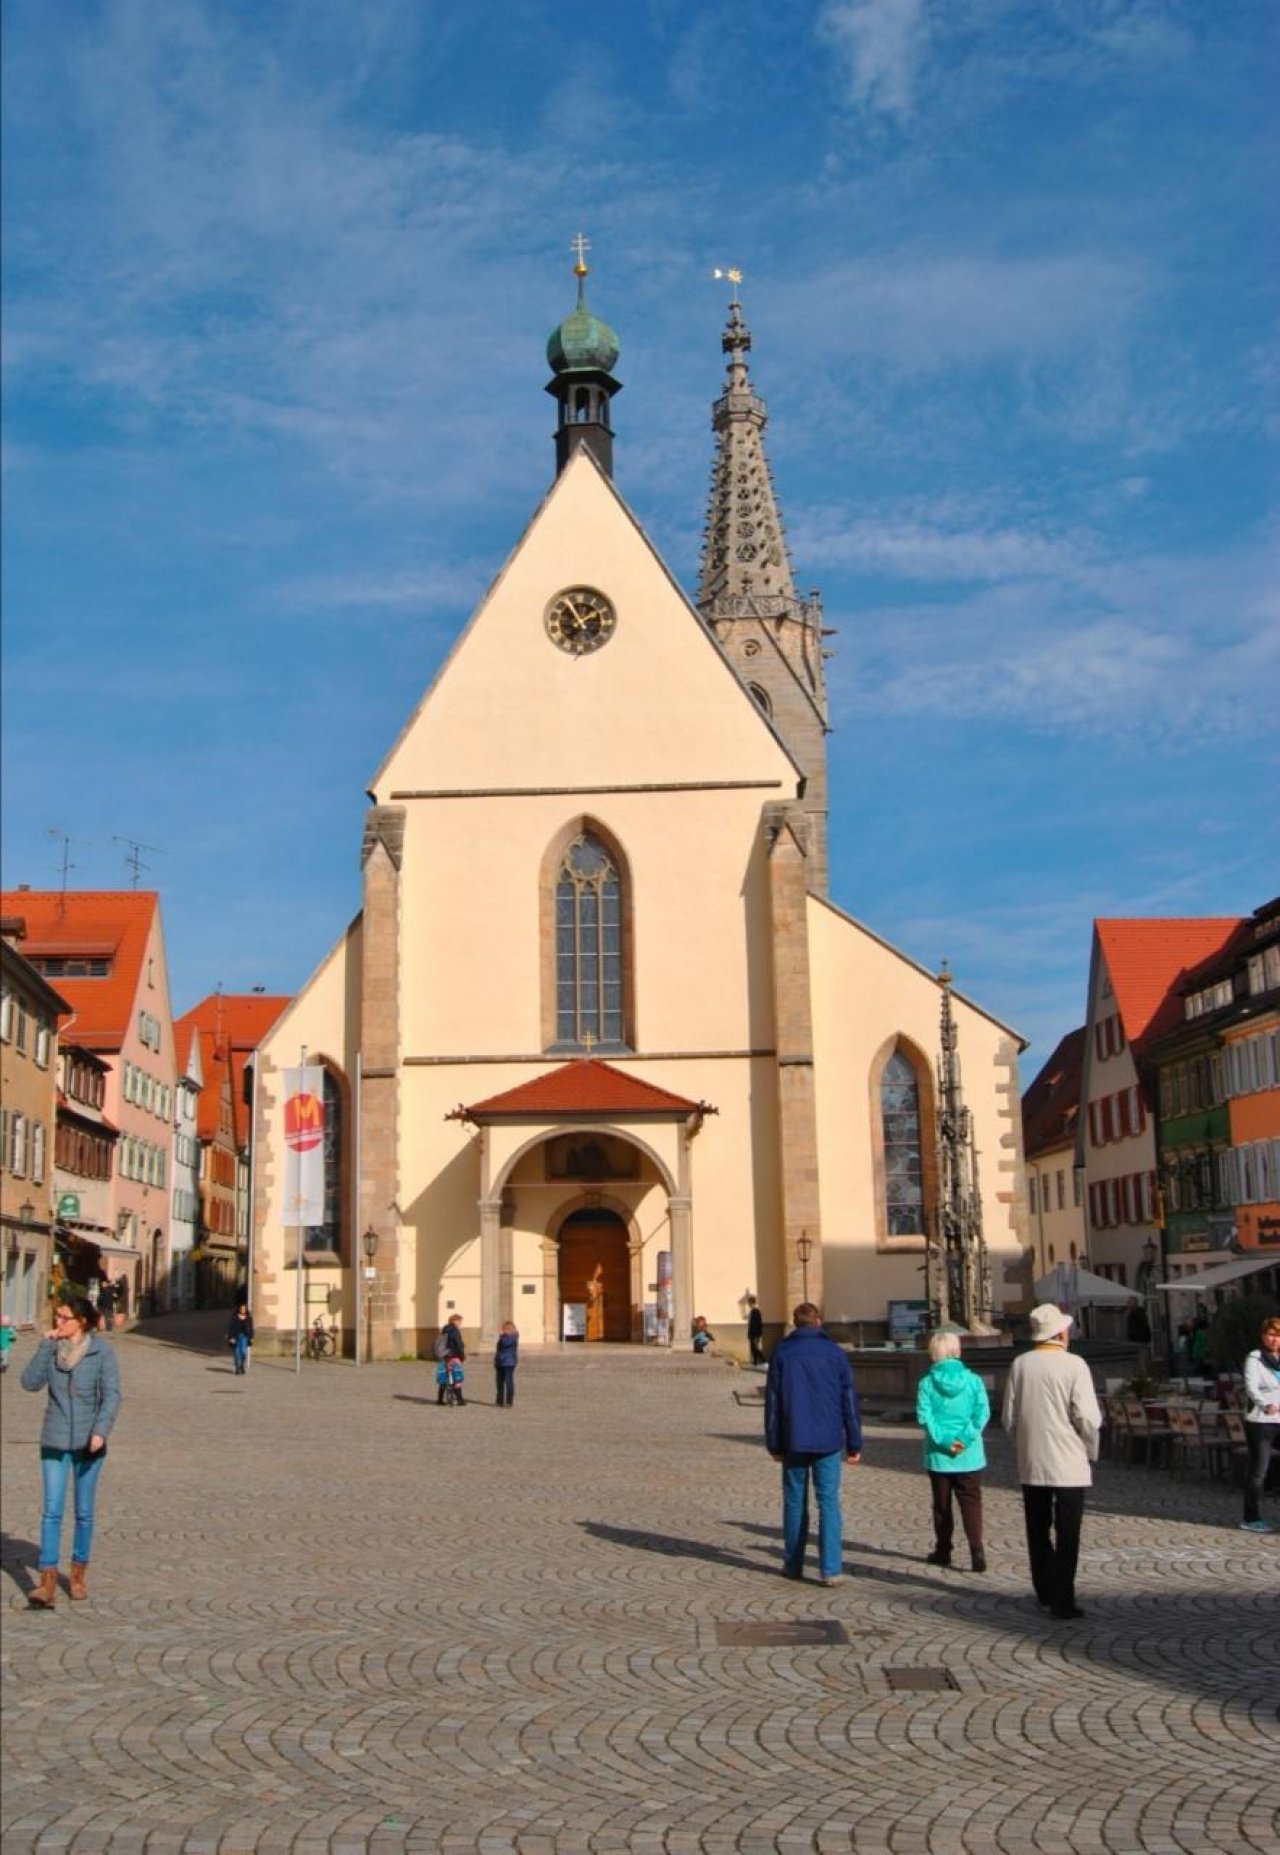 Kirche in Landauf, LandApp BW App spotted by Harry Schneckenburger on 27.10.2016